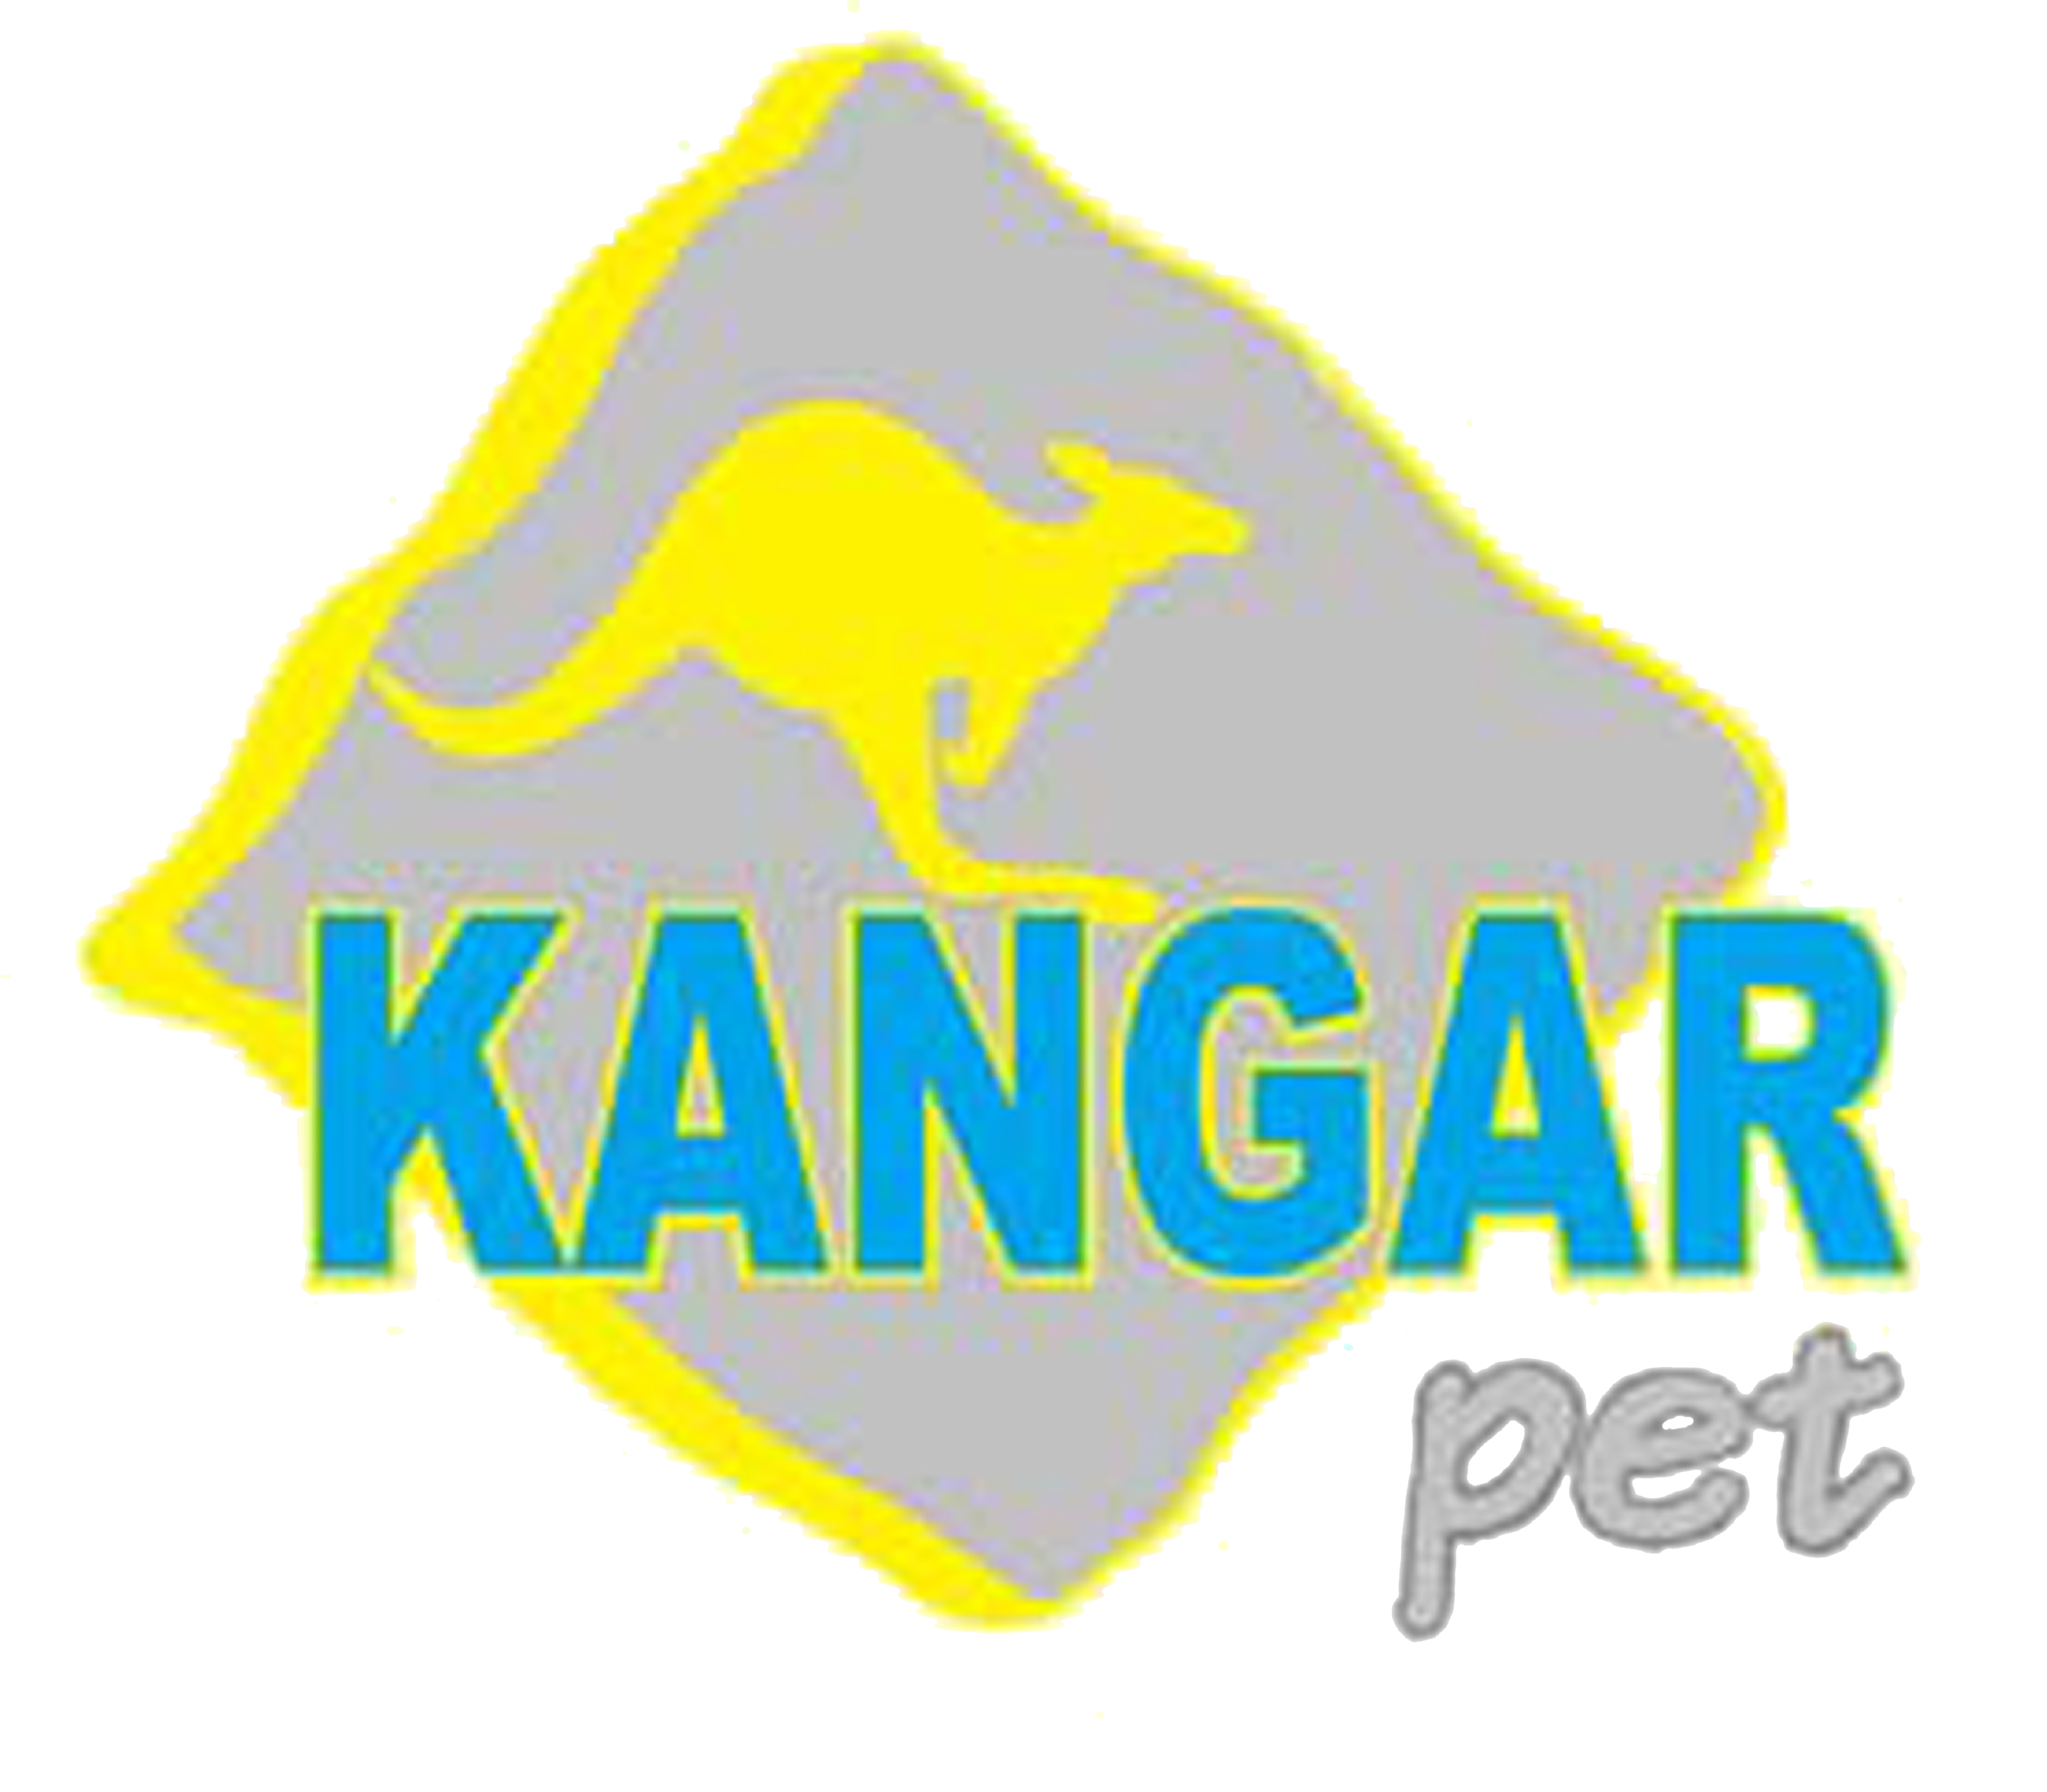 Kangar Pet Shop Logo